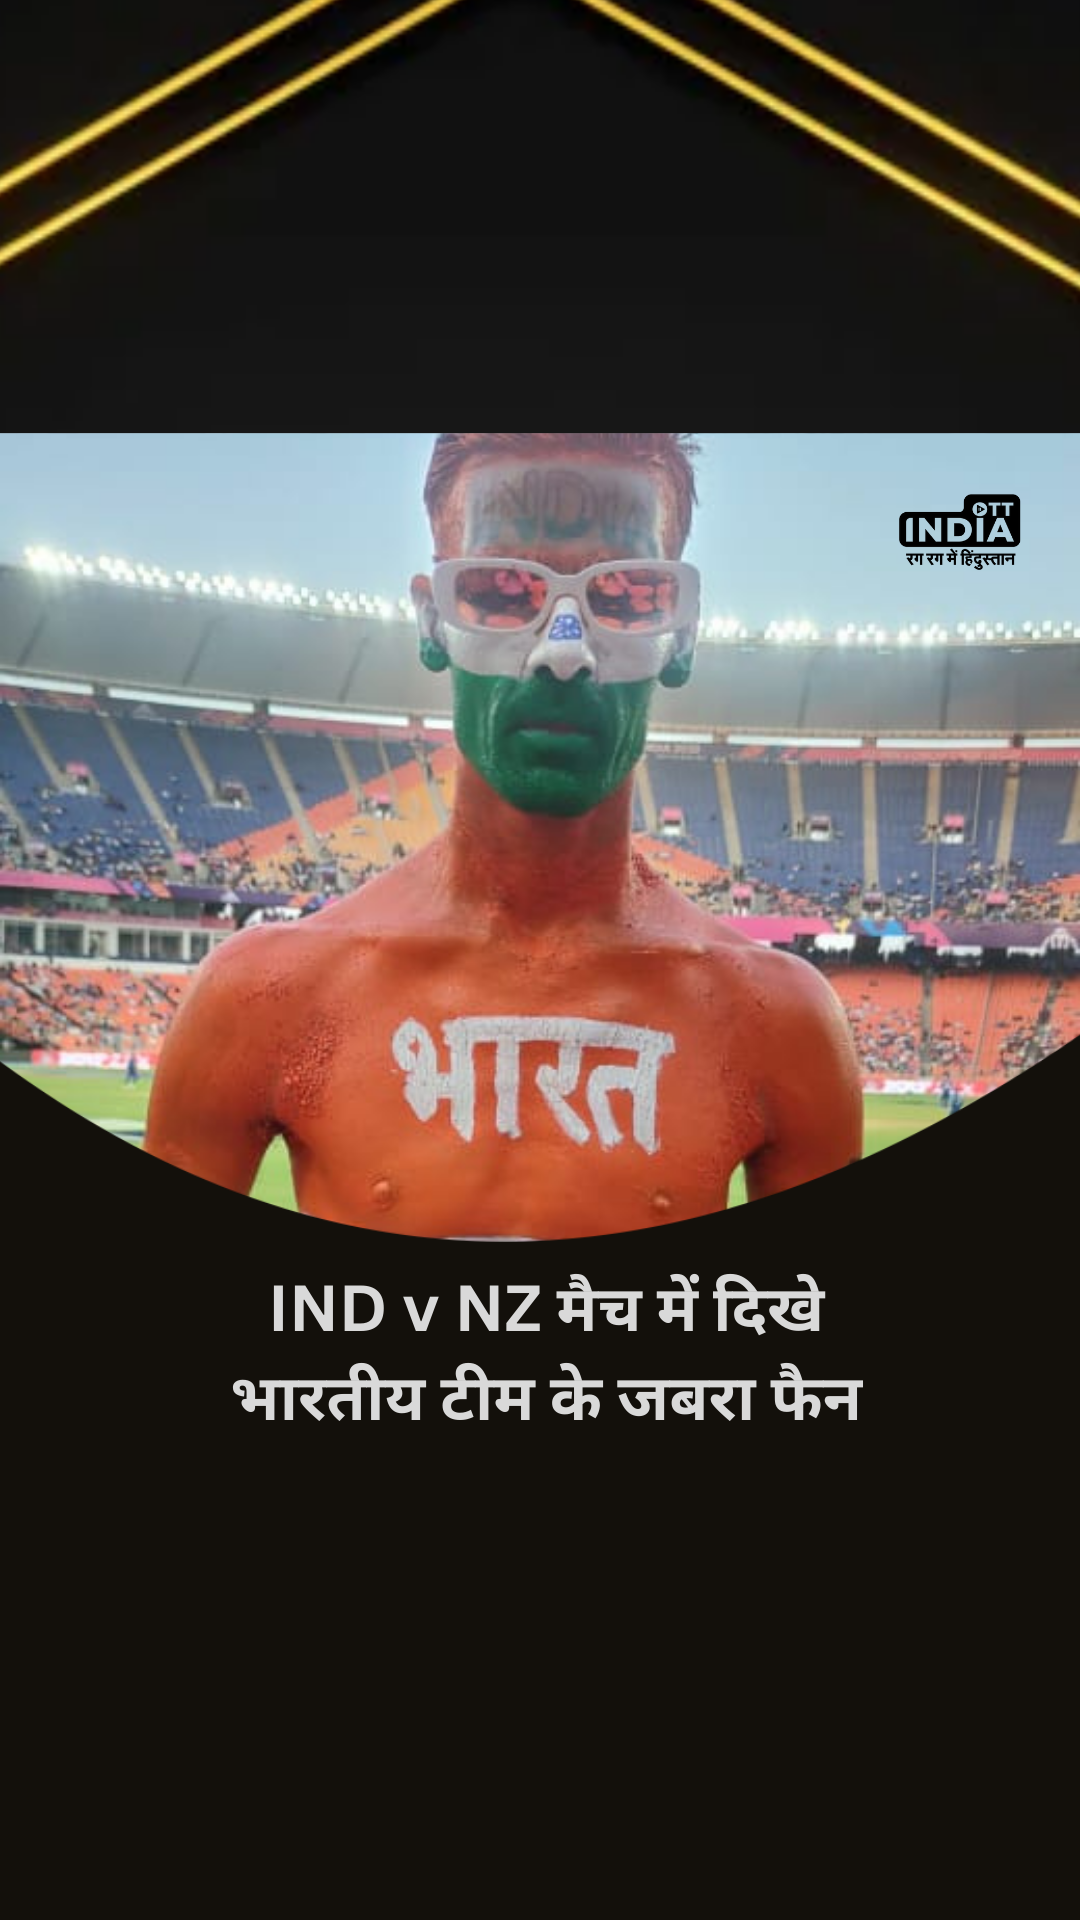 IND v NZ मैच में दिखे भारतीय टीम के जबरा फैन